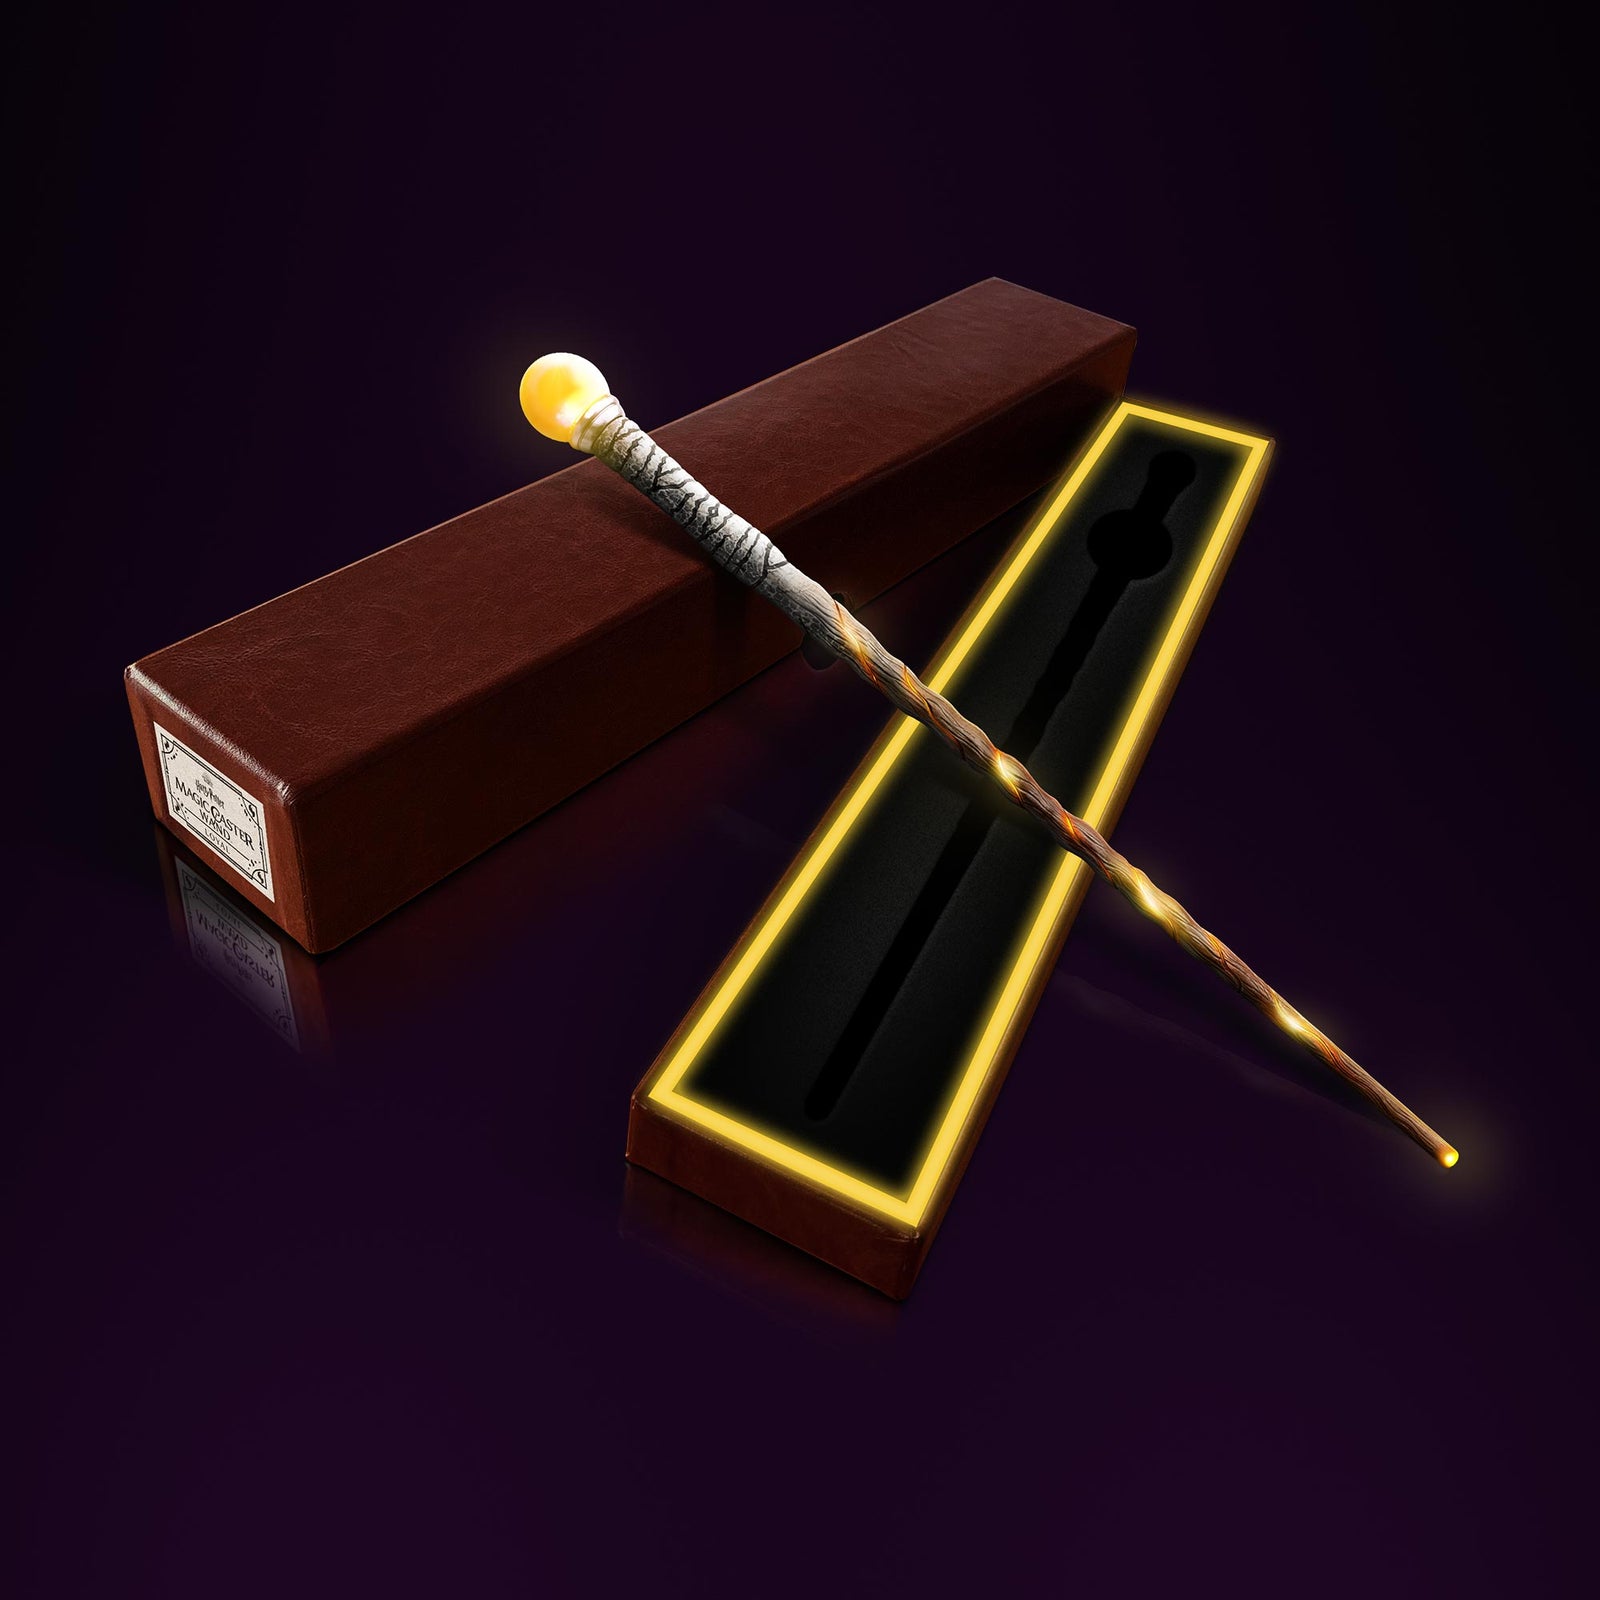 Loyal Loyal wand glowing while laying on top of open wand box